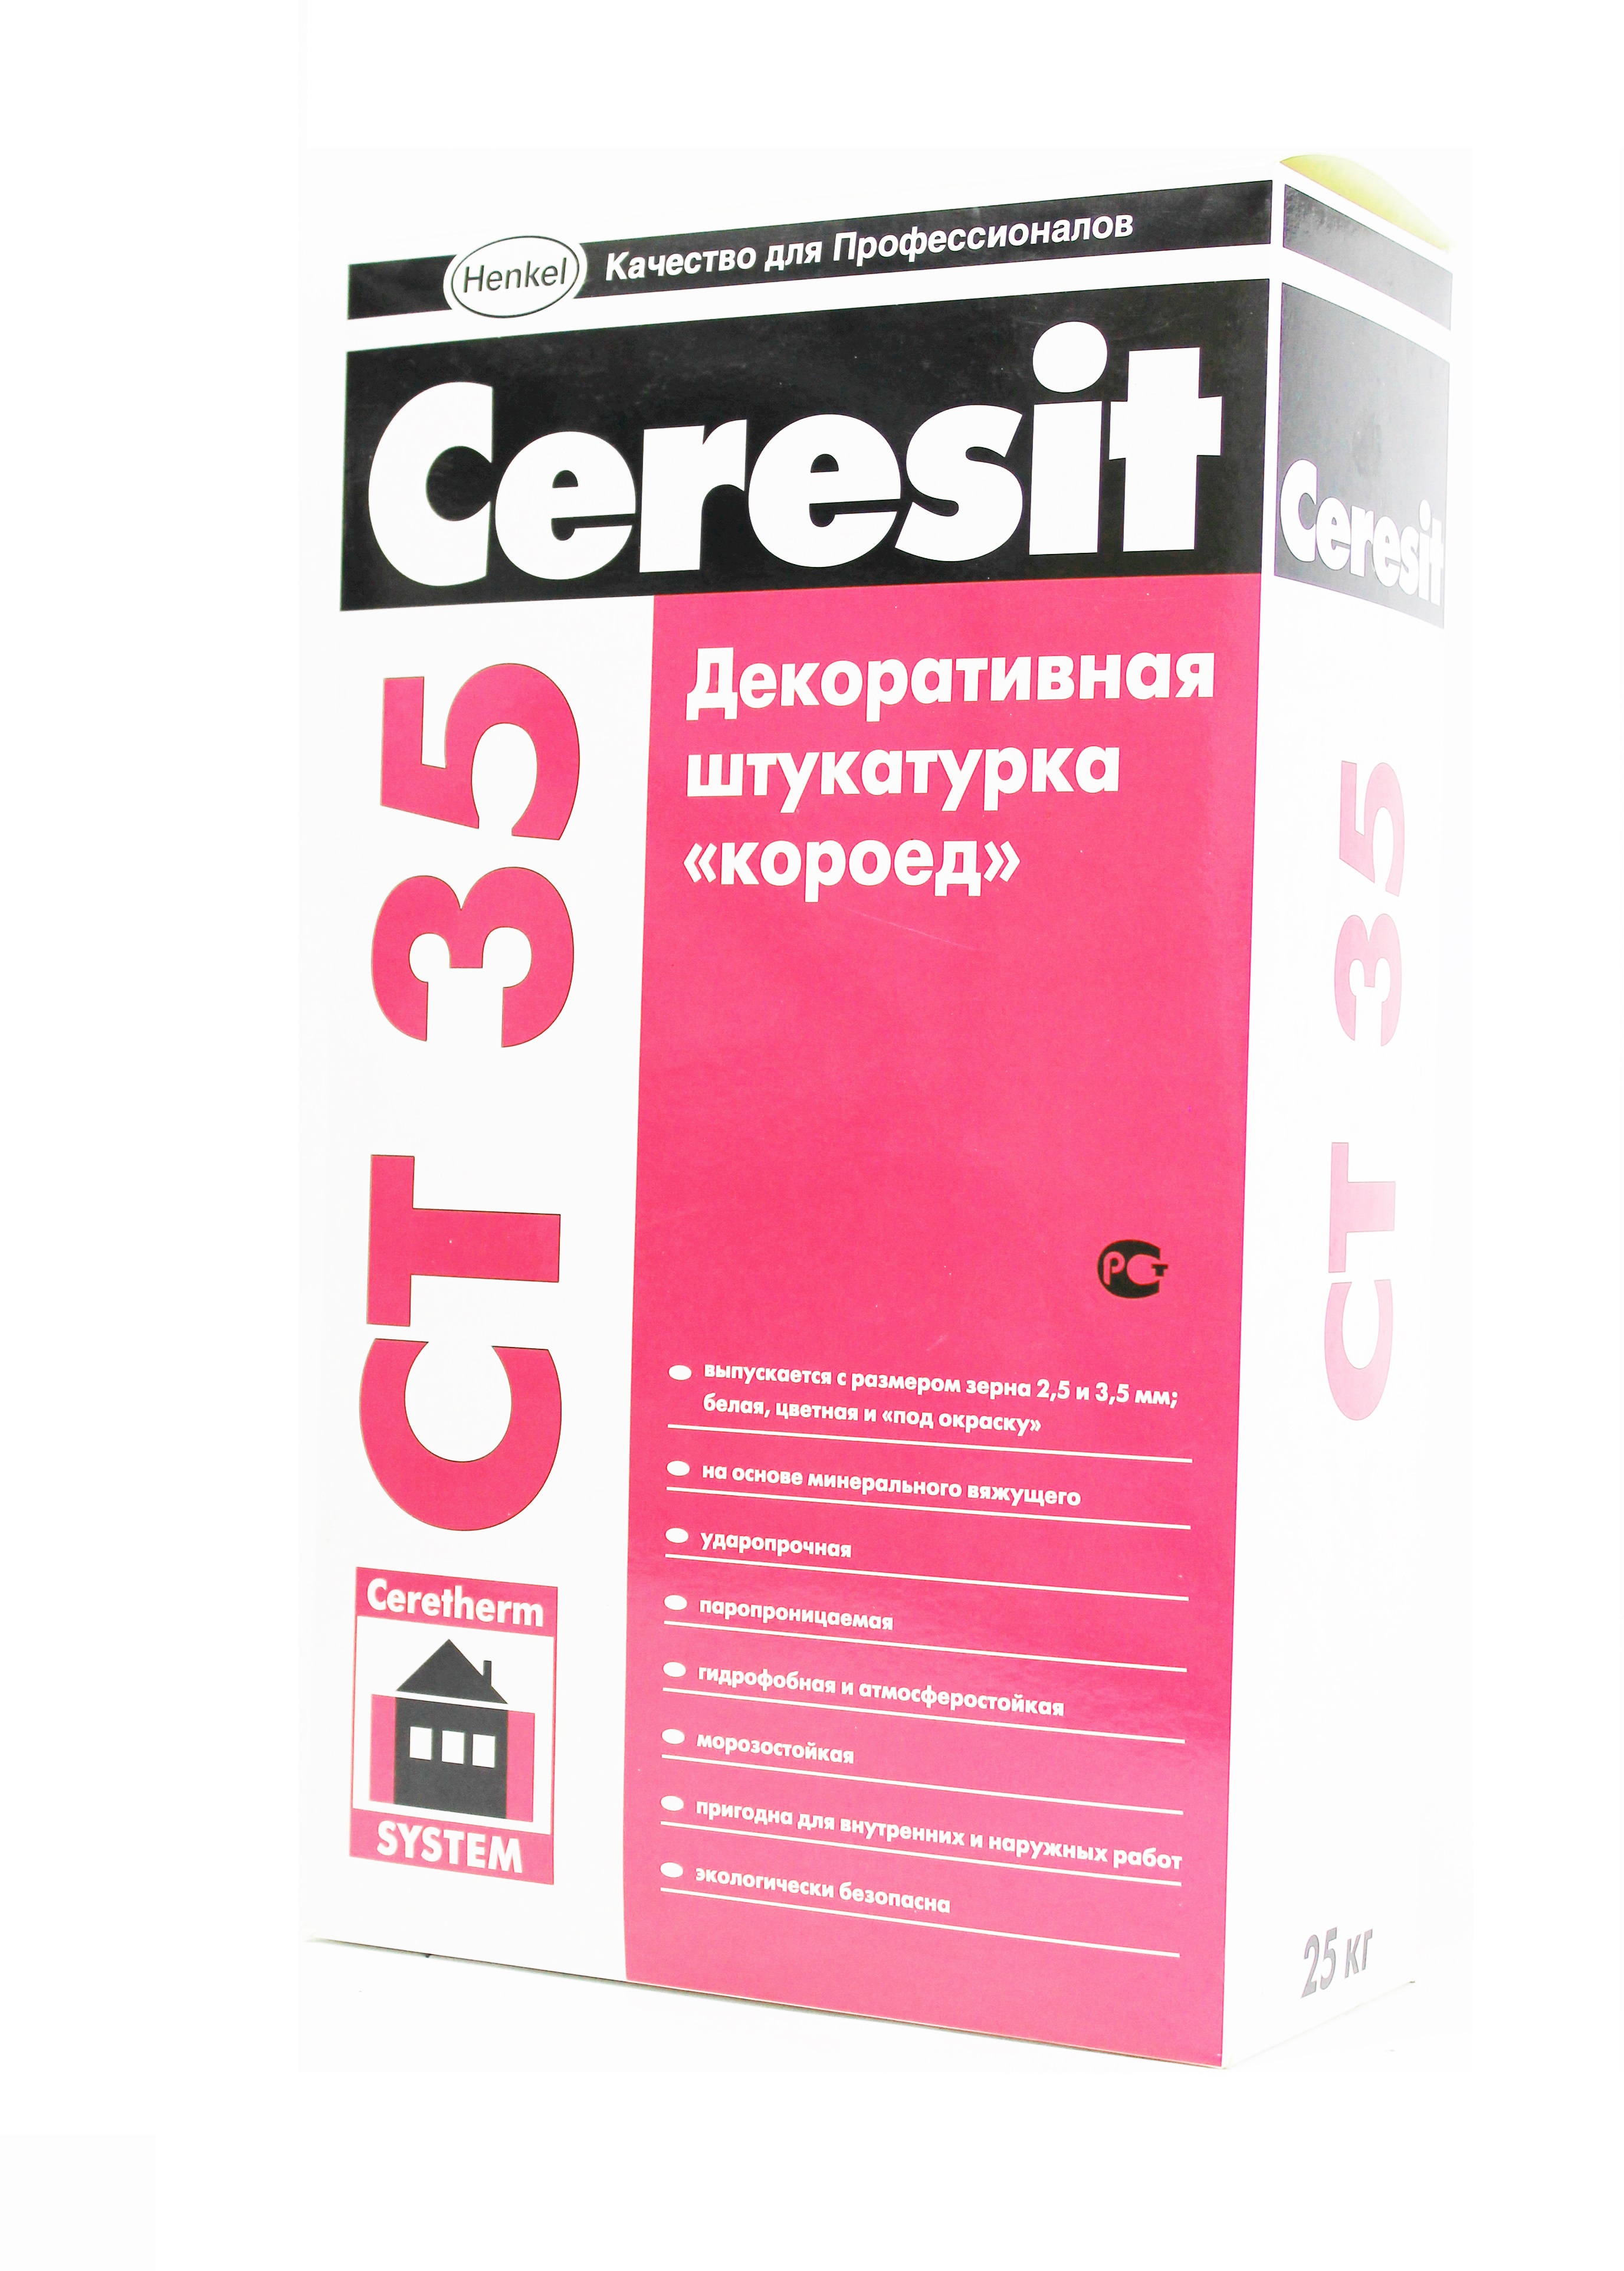 Штукатурка декоративная минеральная Ceresit СТ 35 короед белая зерно 2.5 мм  25 кг — характеристики, применение, документация